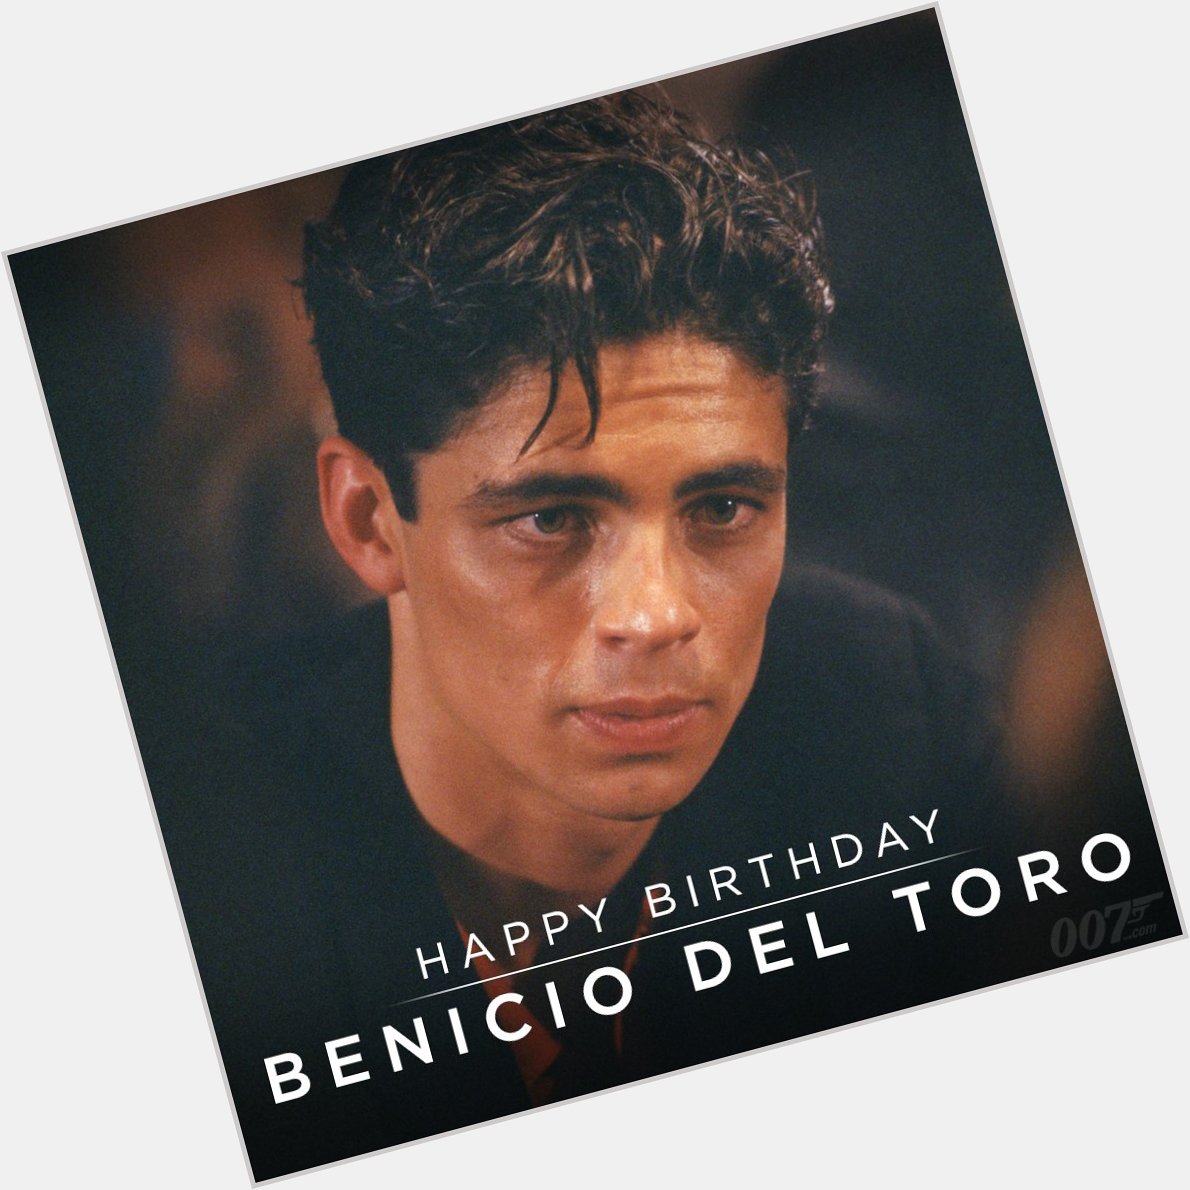 Happy Birthday to Benicio Del Toro! He played Dario in LICENCE TO KILL (1989).  